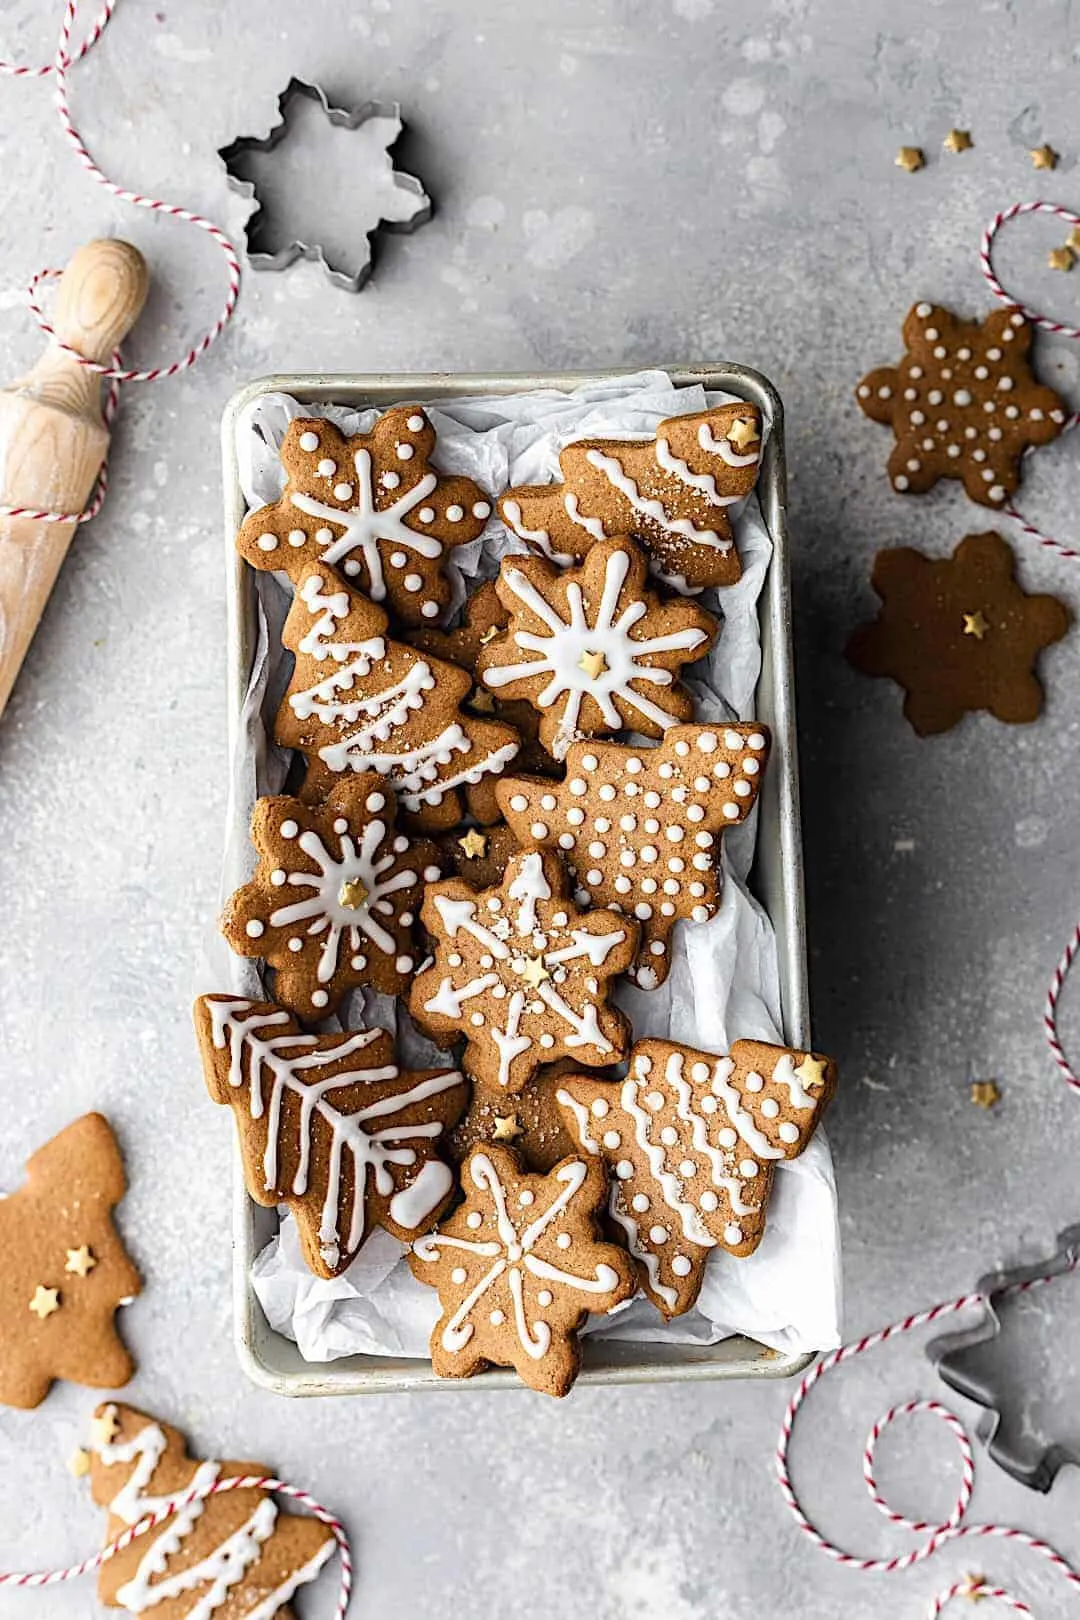 Easy Vegan Gingerbread Cookies #gingerbread #chistmas #vegan #cookies #biscuits #dairyfree